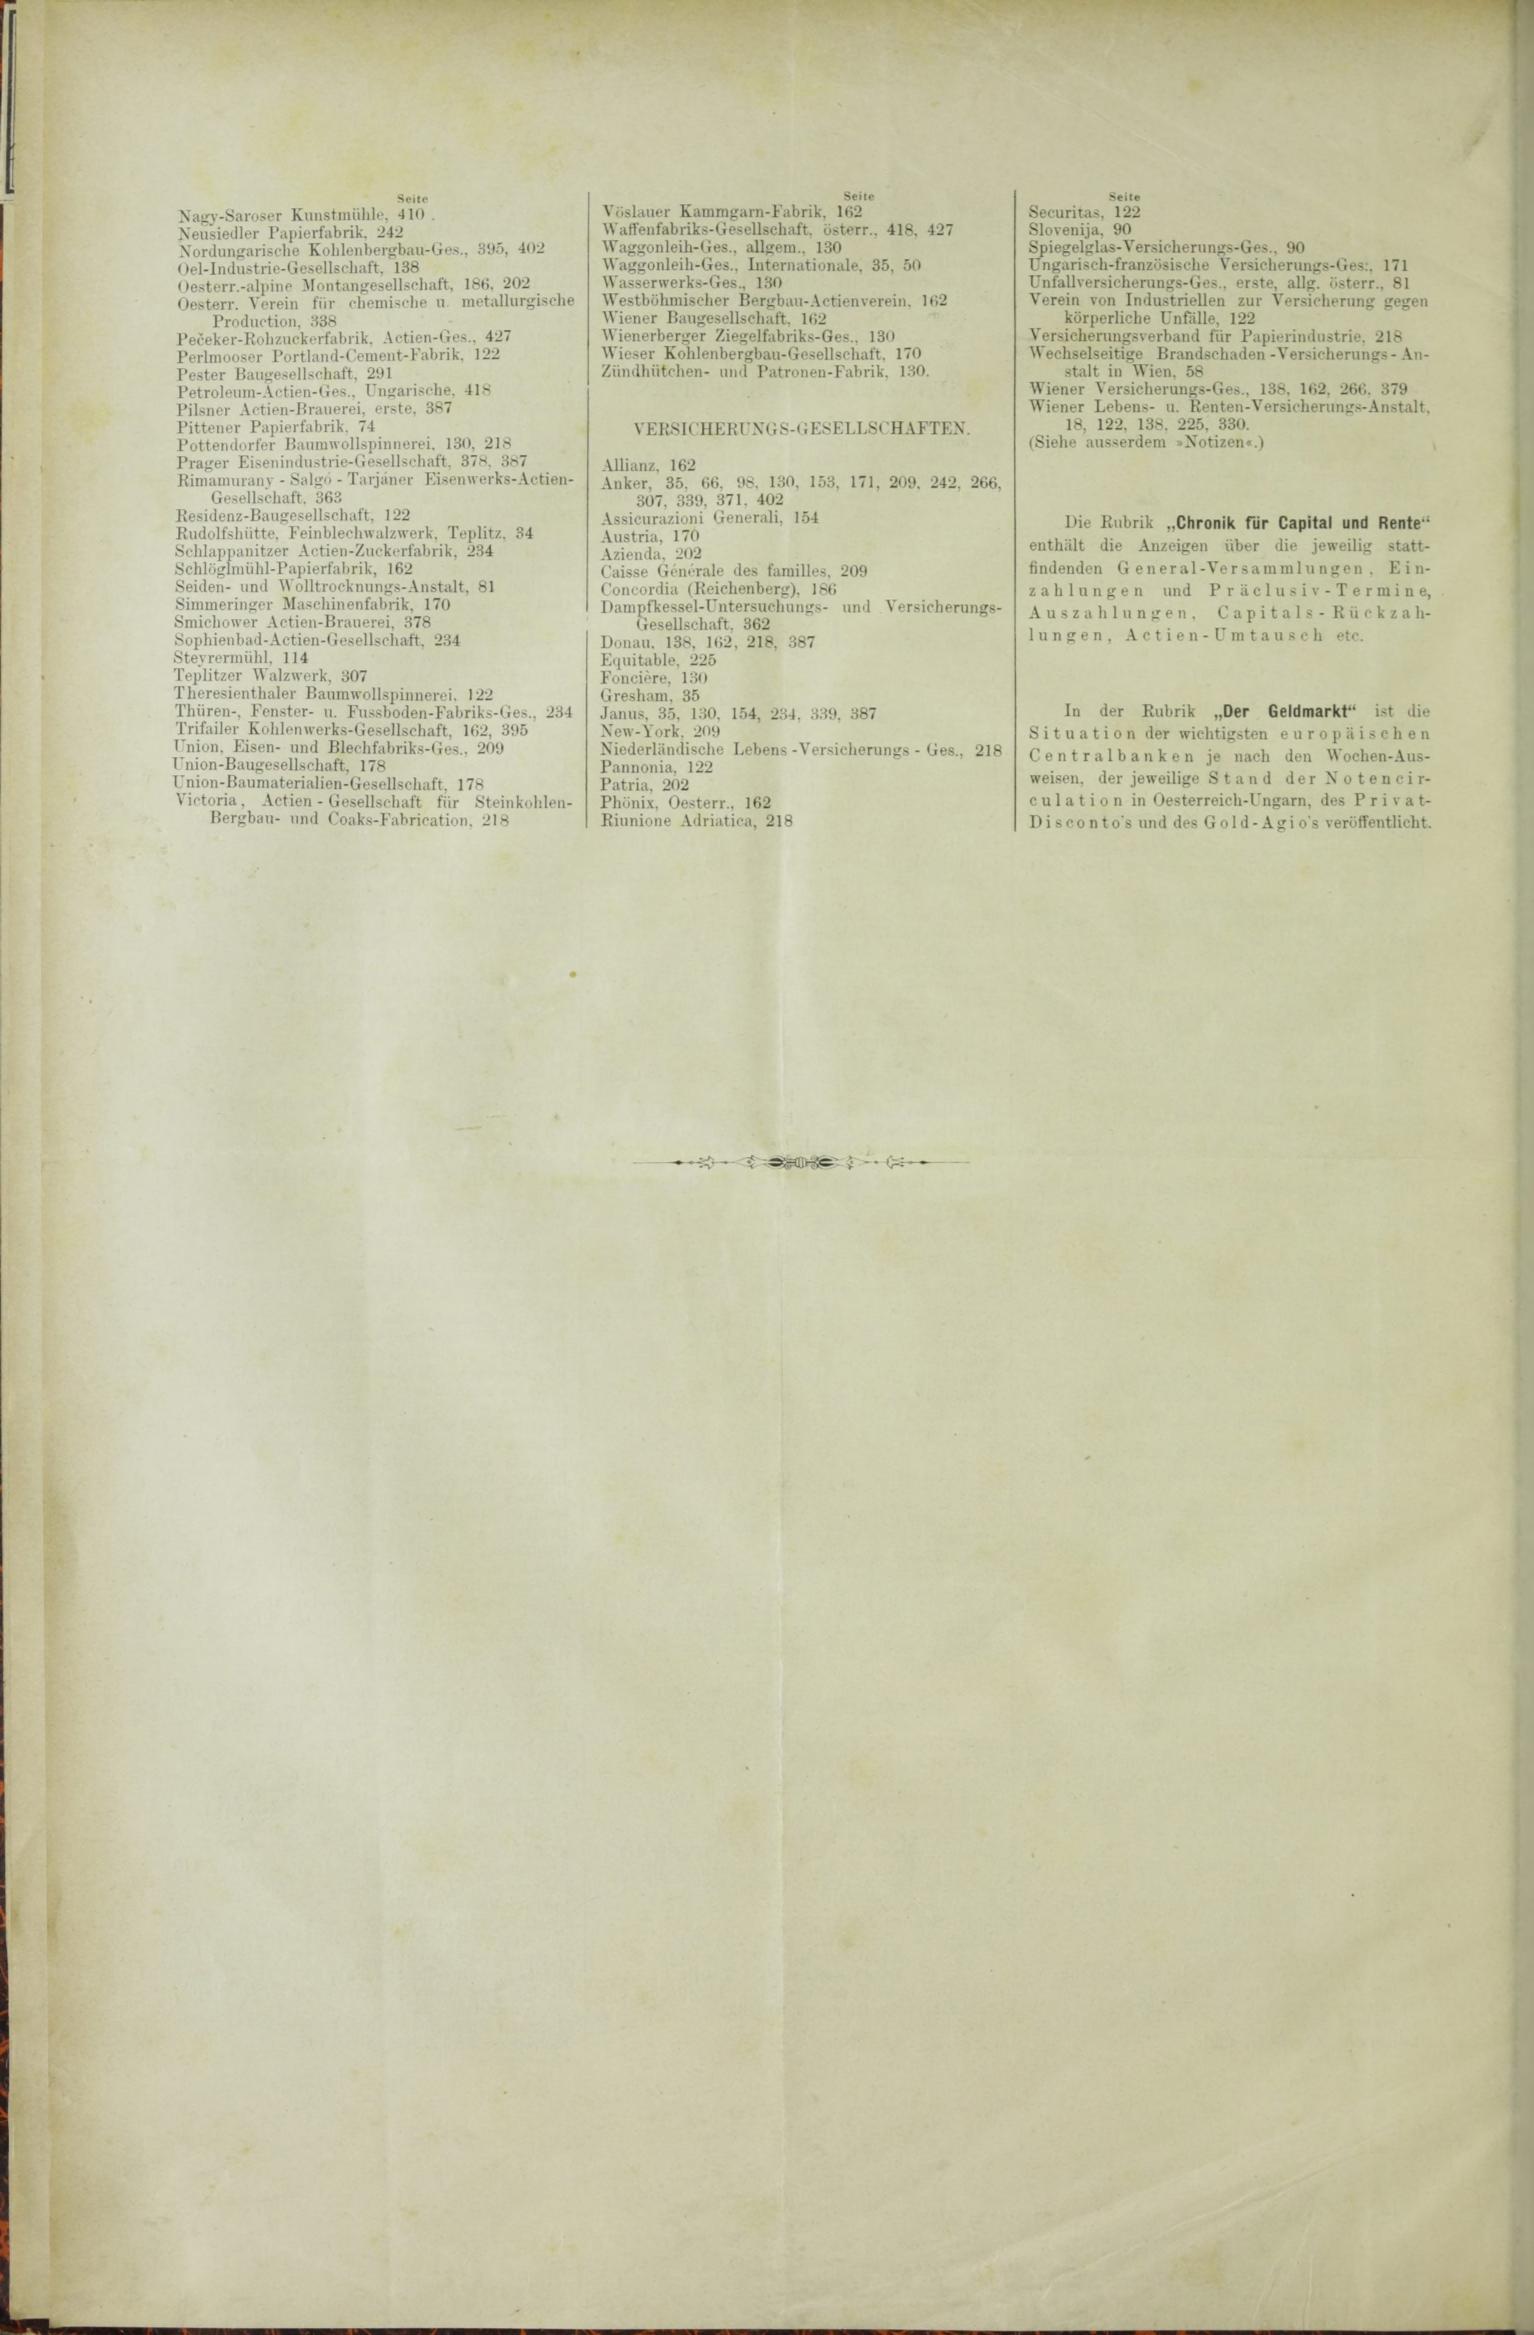 Der Tresor 26.11.1885 - Seite 12